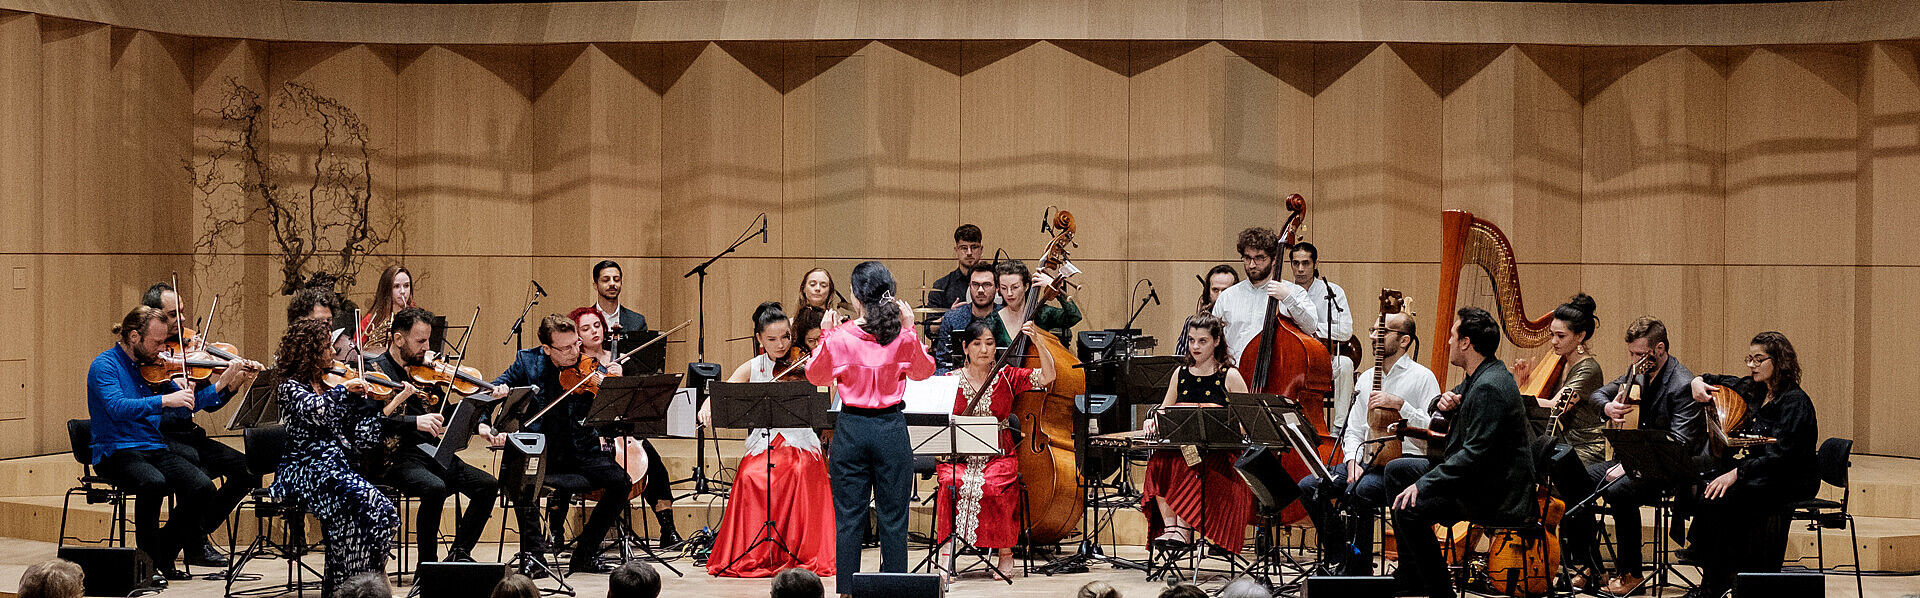 Das Bridges Kammerorchester kommt erneut ins Casals Forum